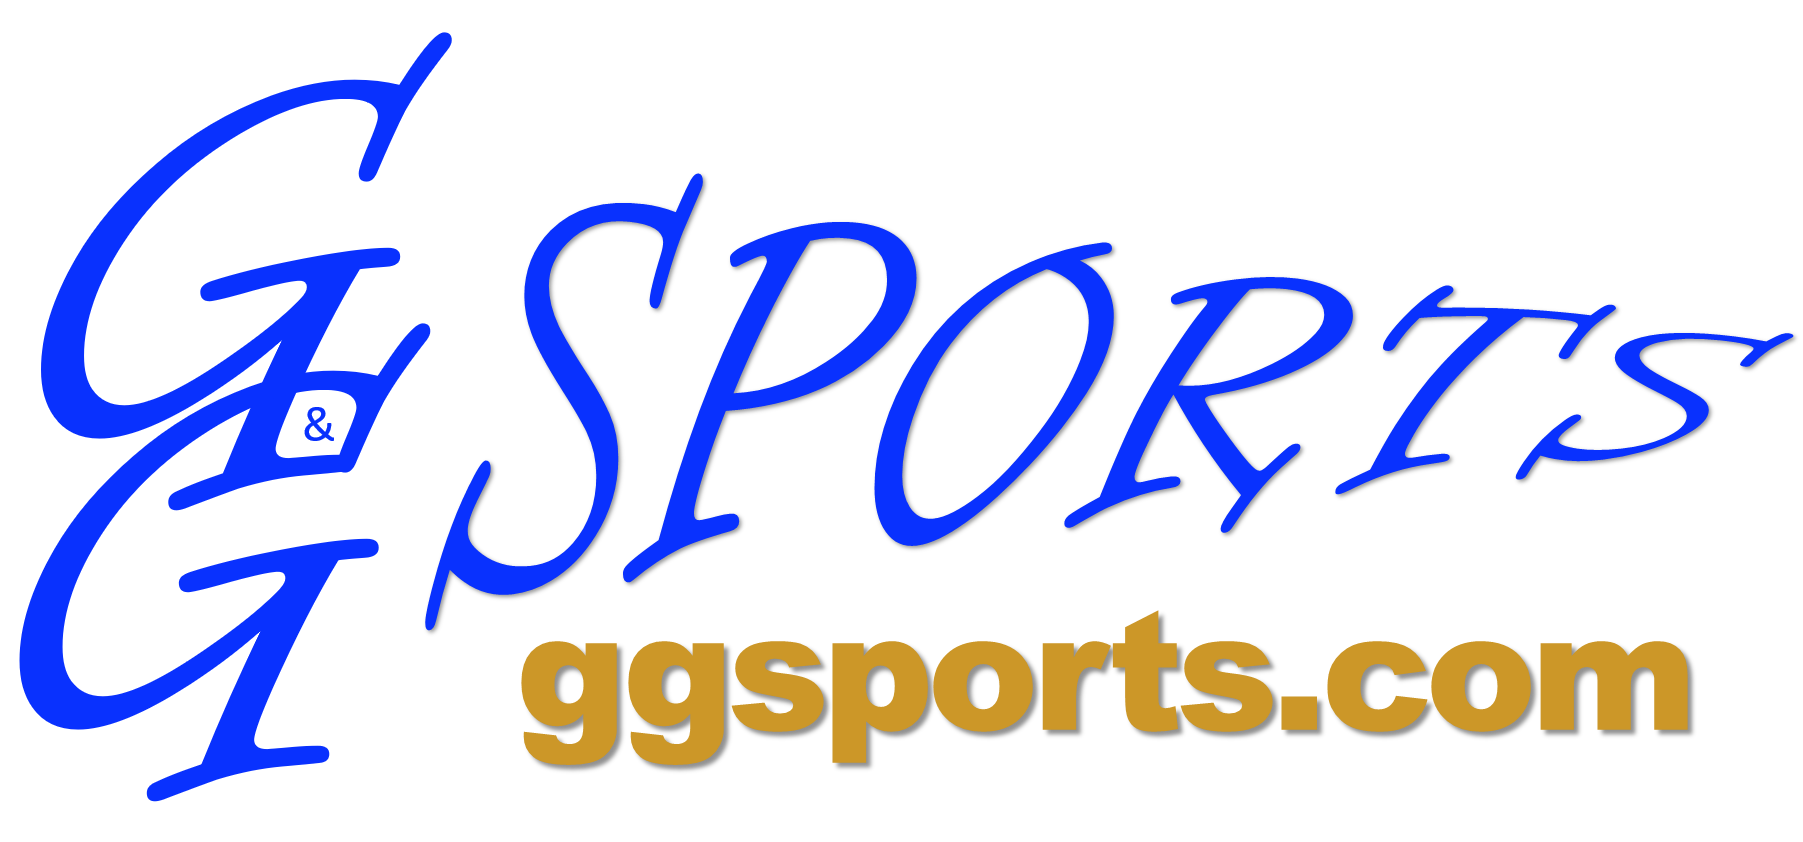 G&G Sports Logo